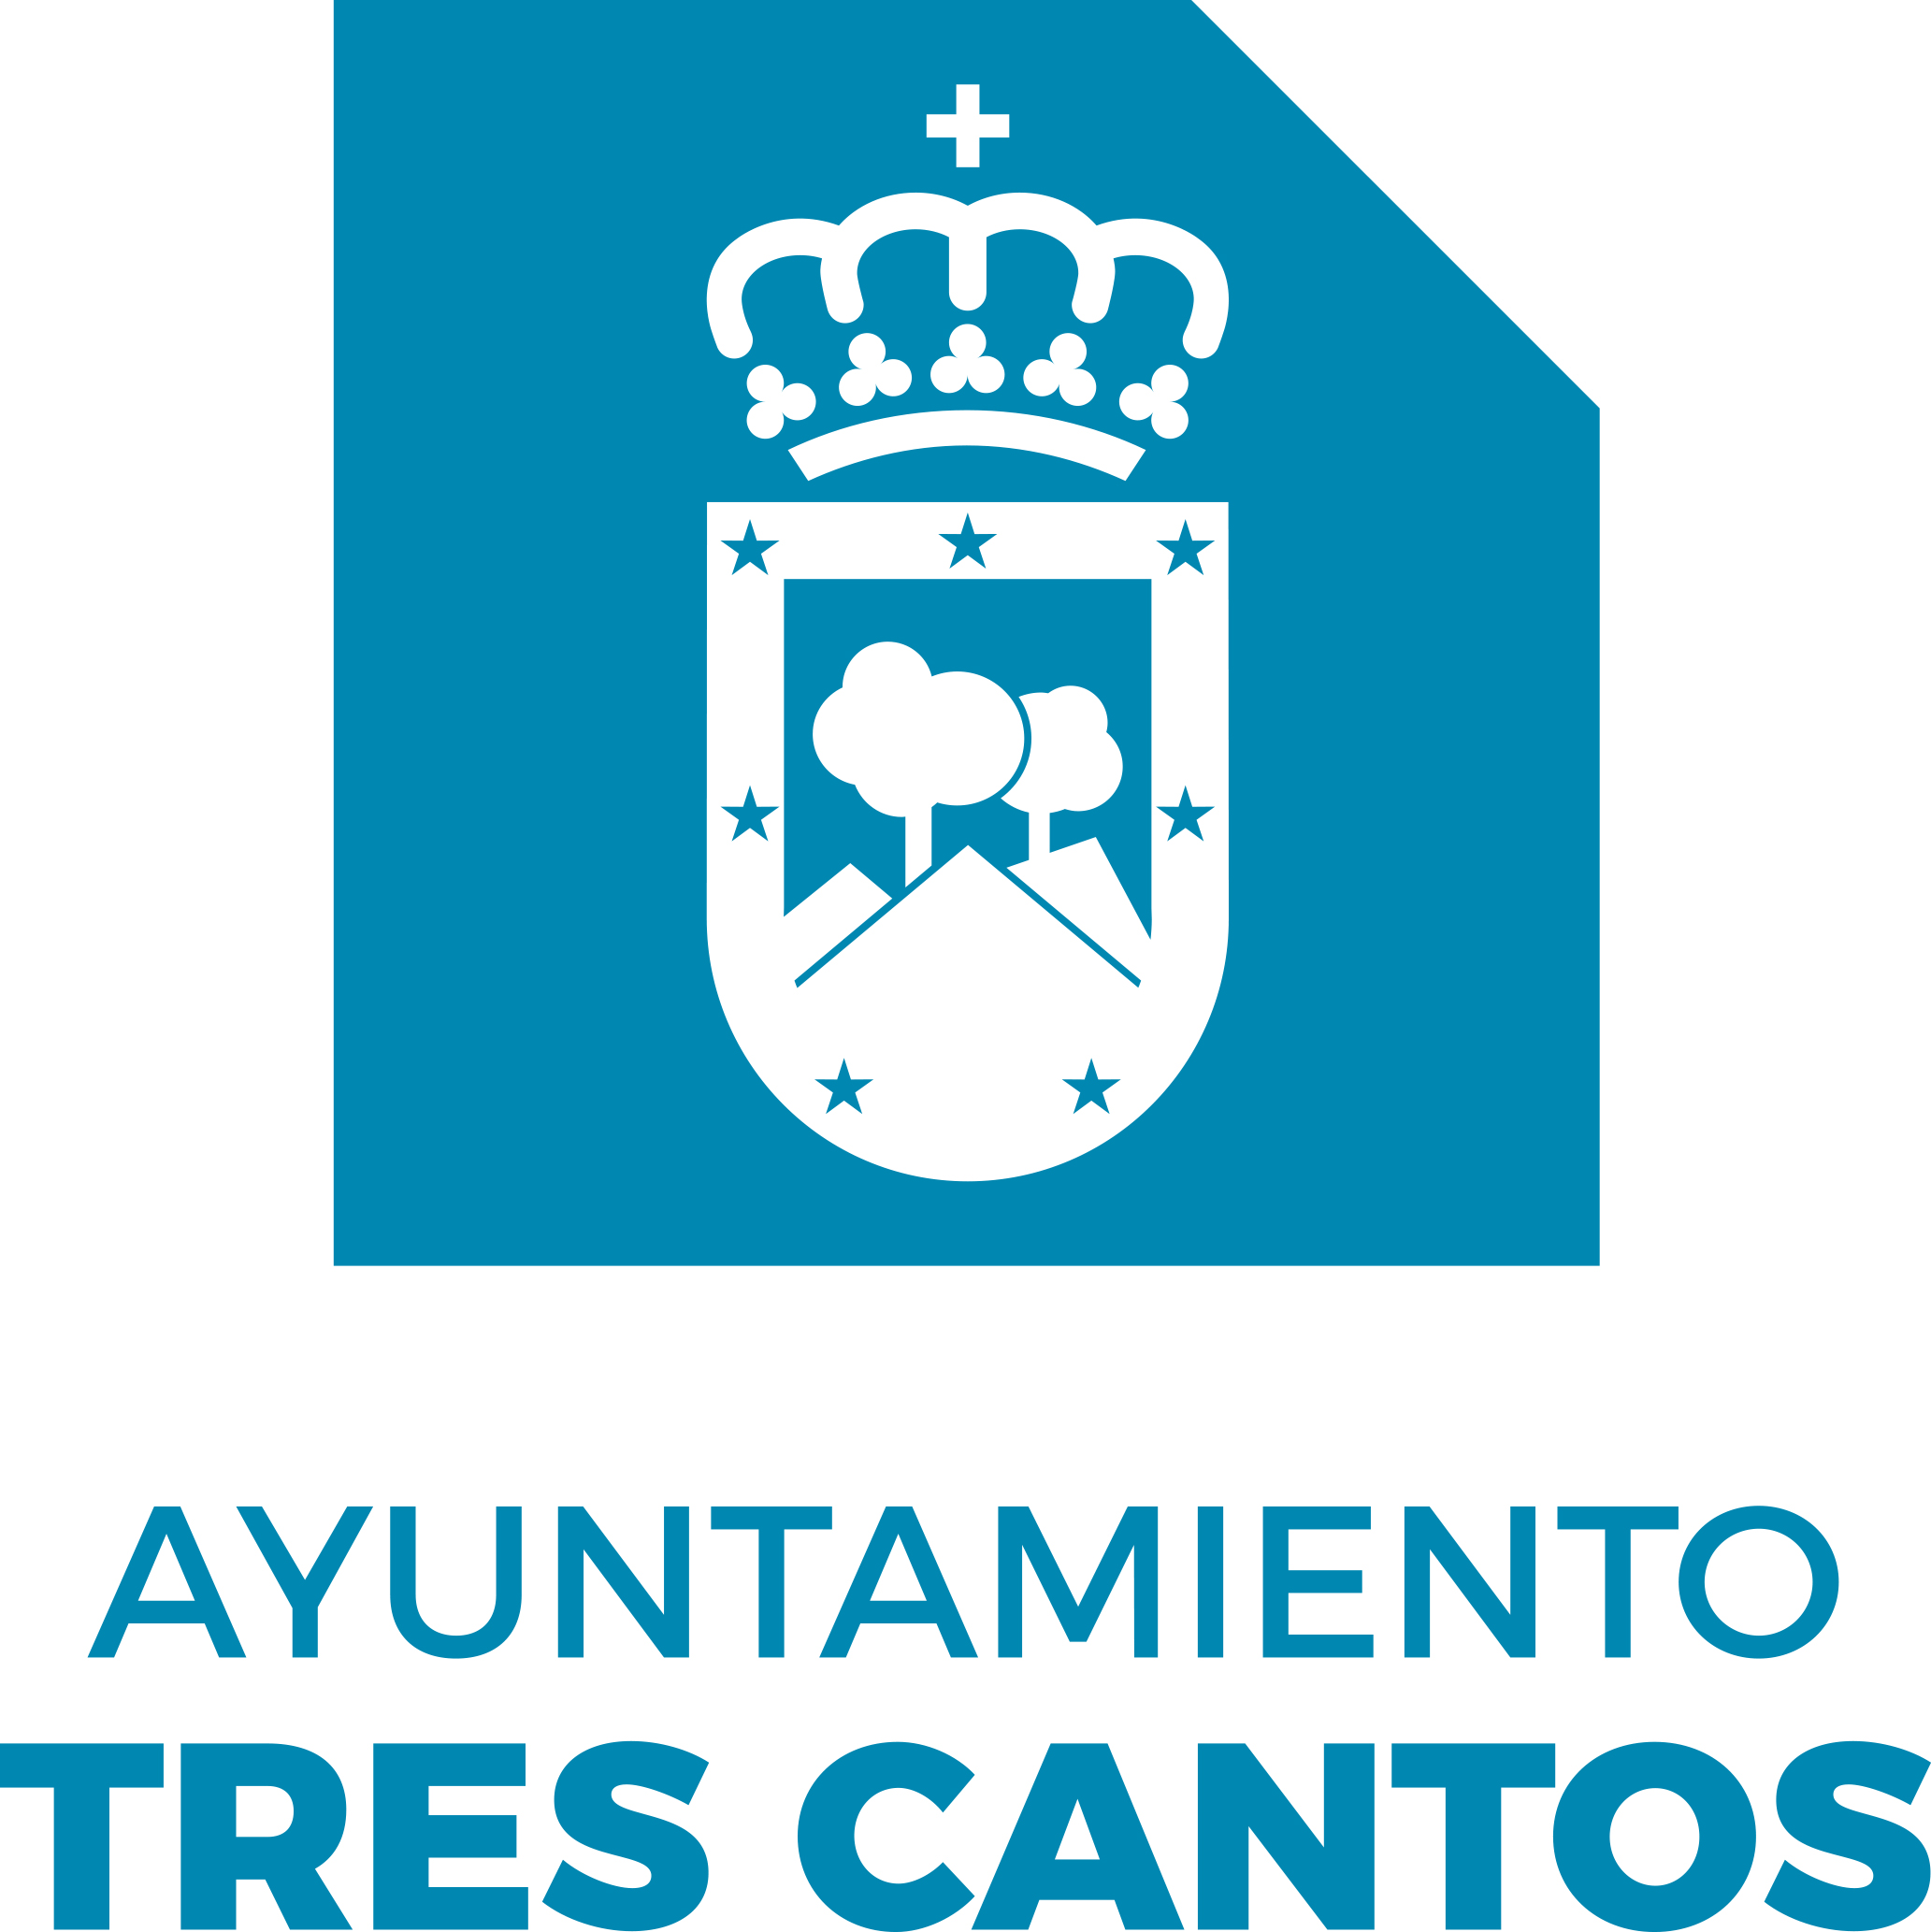 Ayuntamiento Tres Cantos